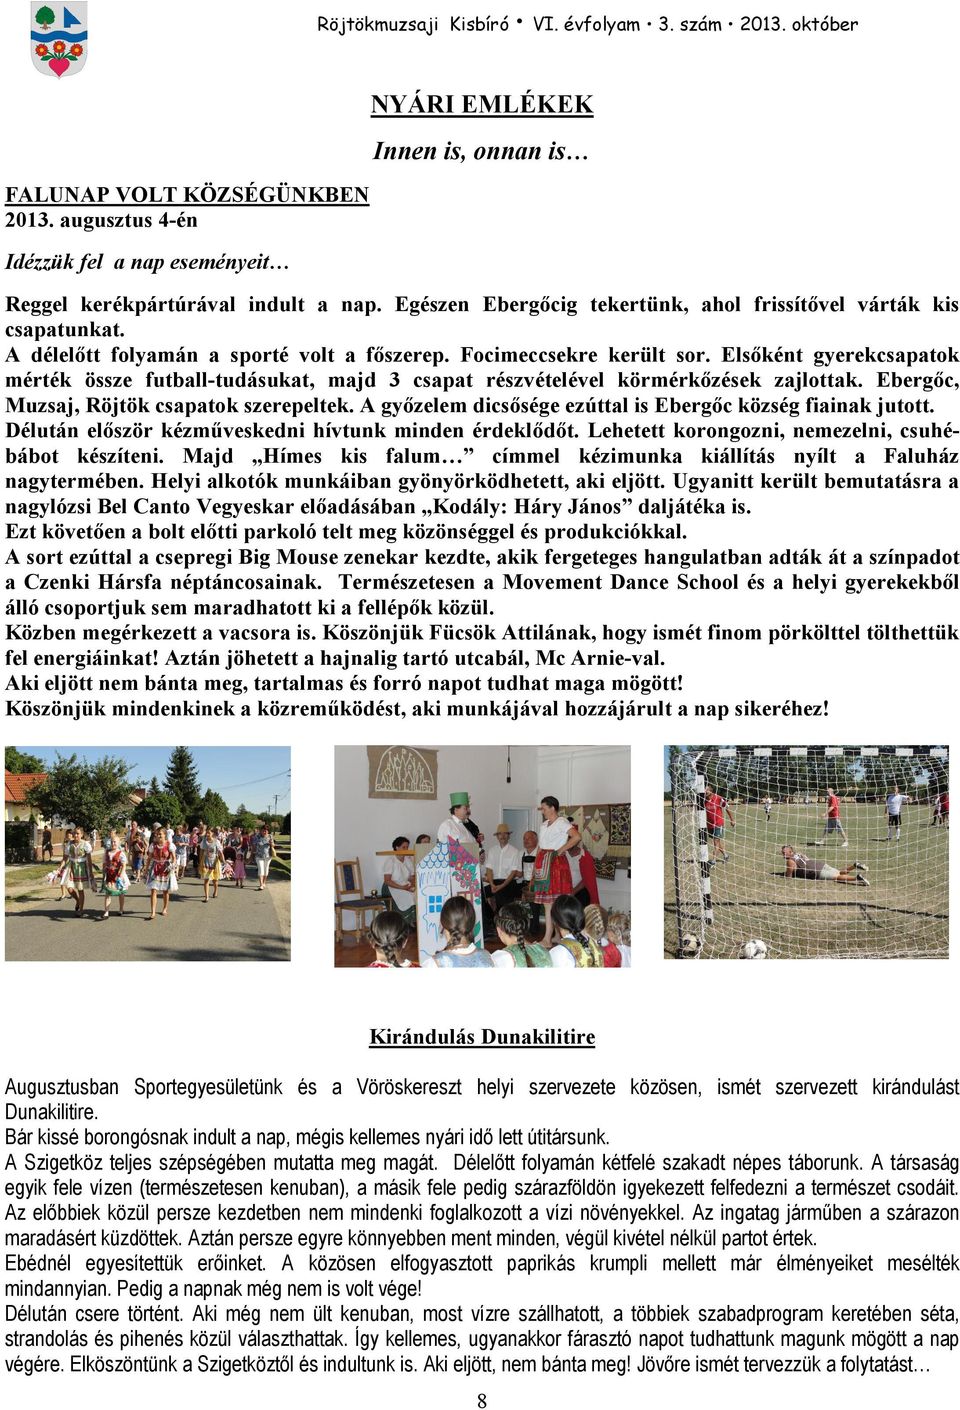 Elsıként gyerekcsapatok mérték össze futball-tudásukat, majd 3 csapat részvételével körmérkızések zajlottak. Ebergıc, Muzsaj, Röjtök csapatok szerepeltek.